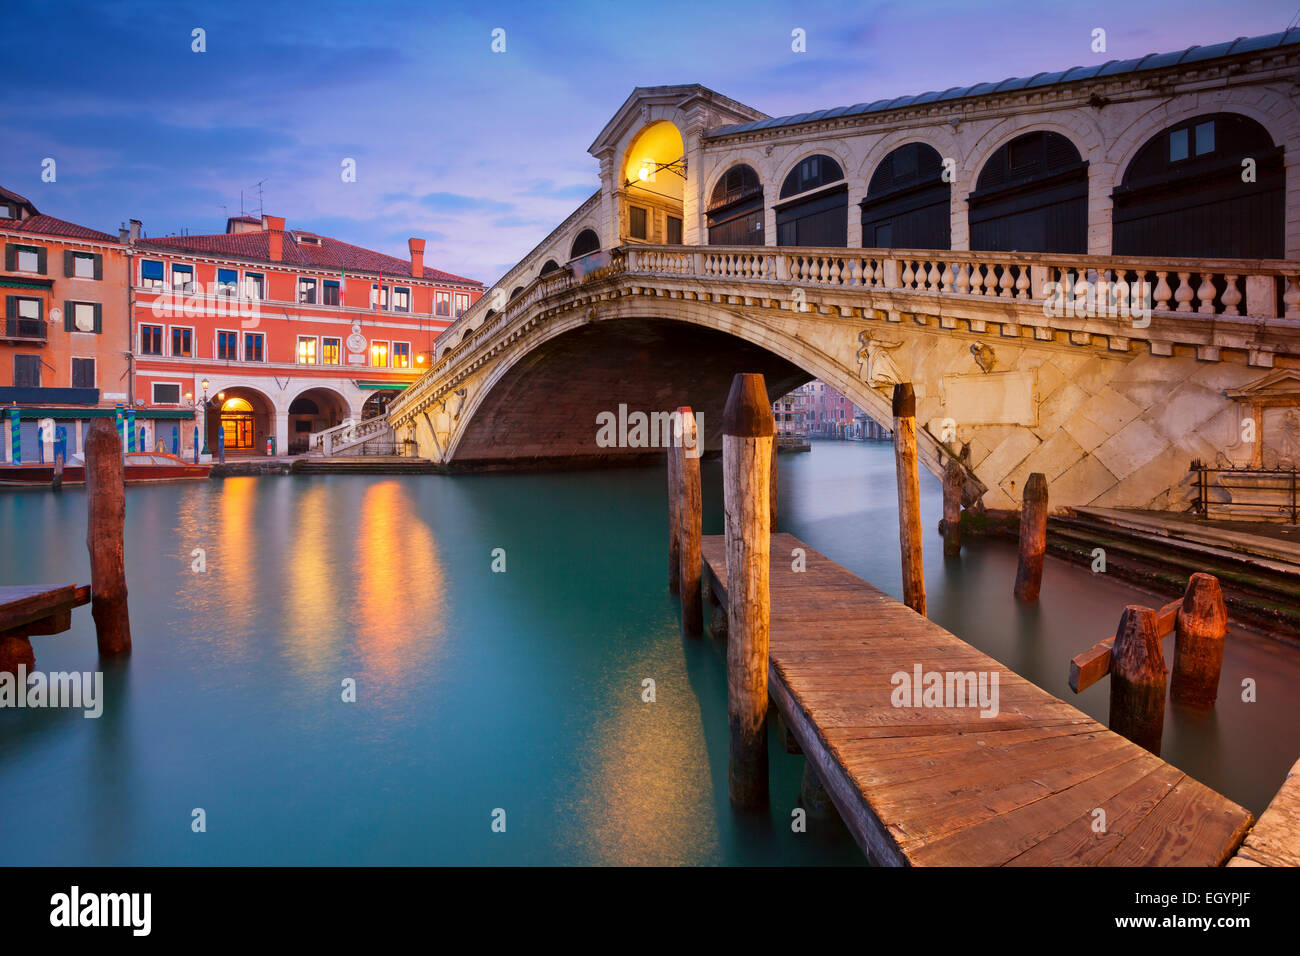 Venice. Image of Rialto Bridge in Venice at dawn. Stock Photo